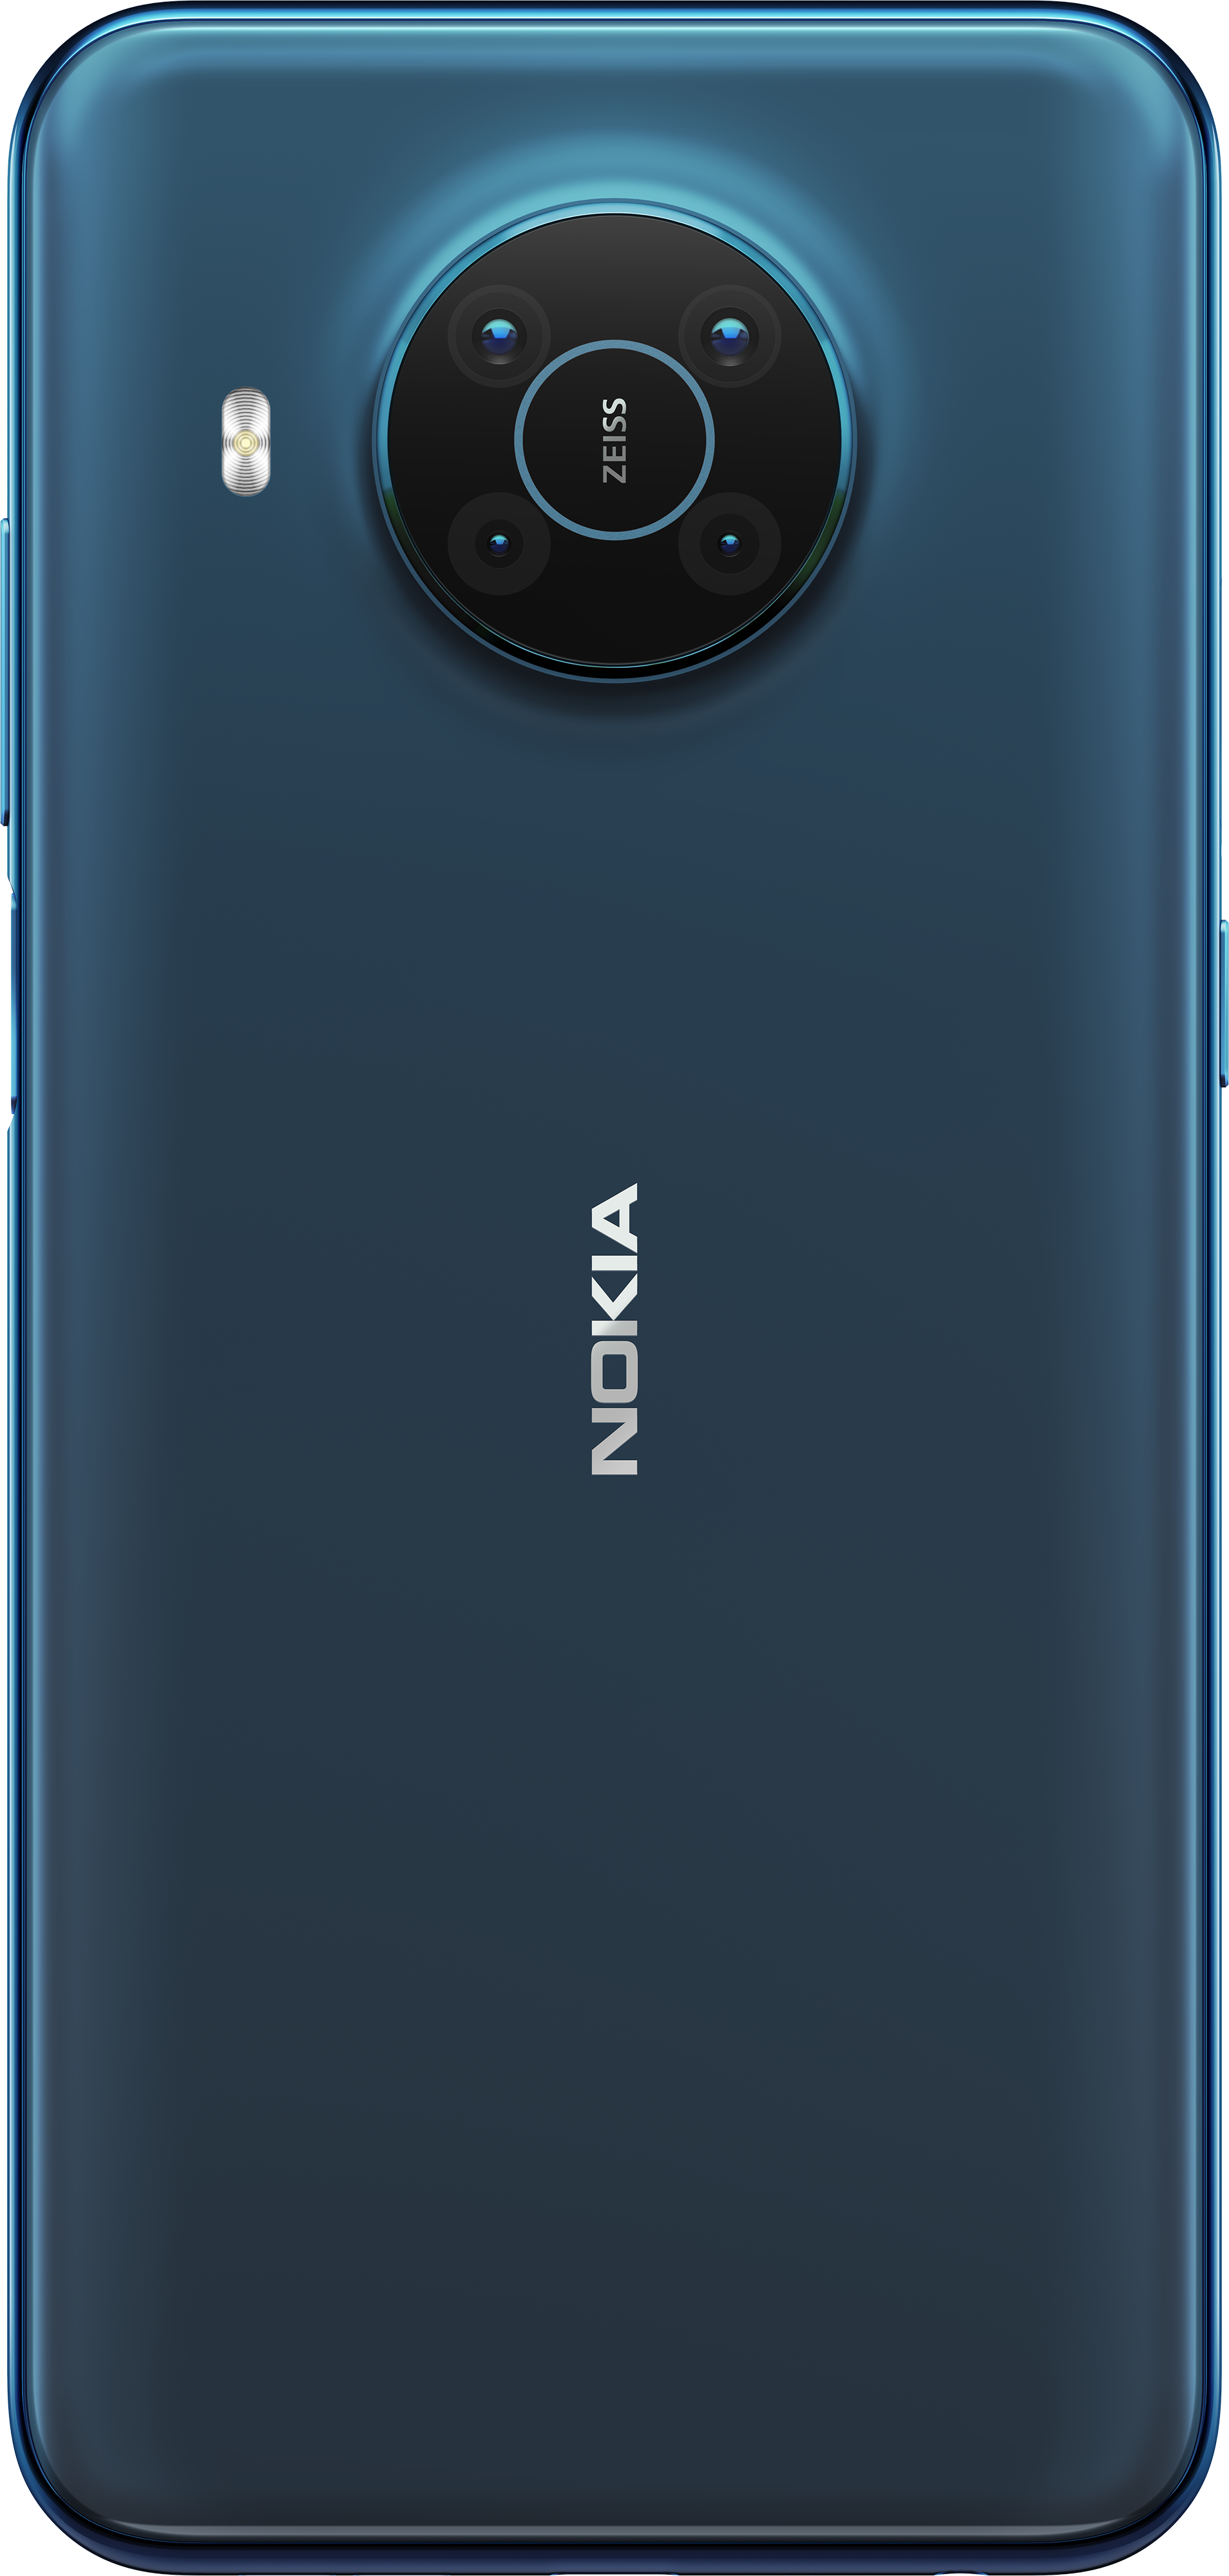 Nokia new model